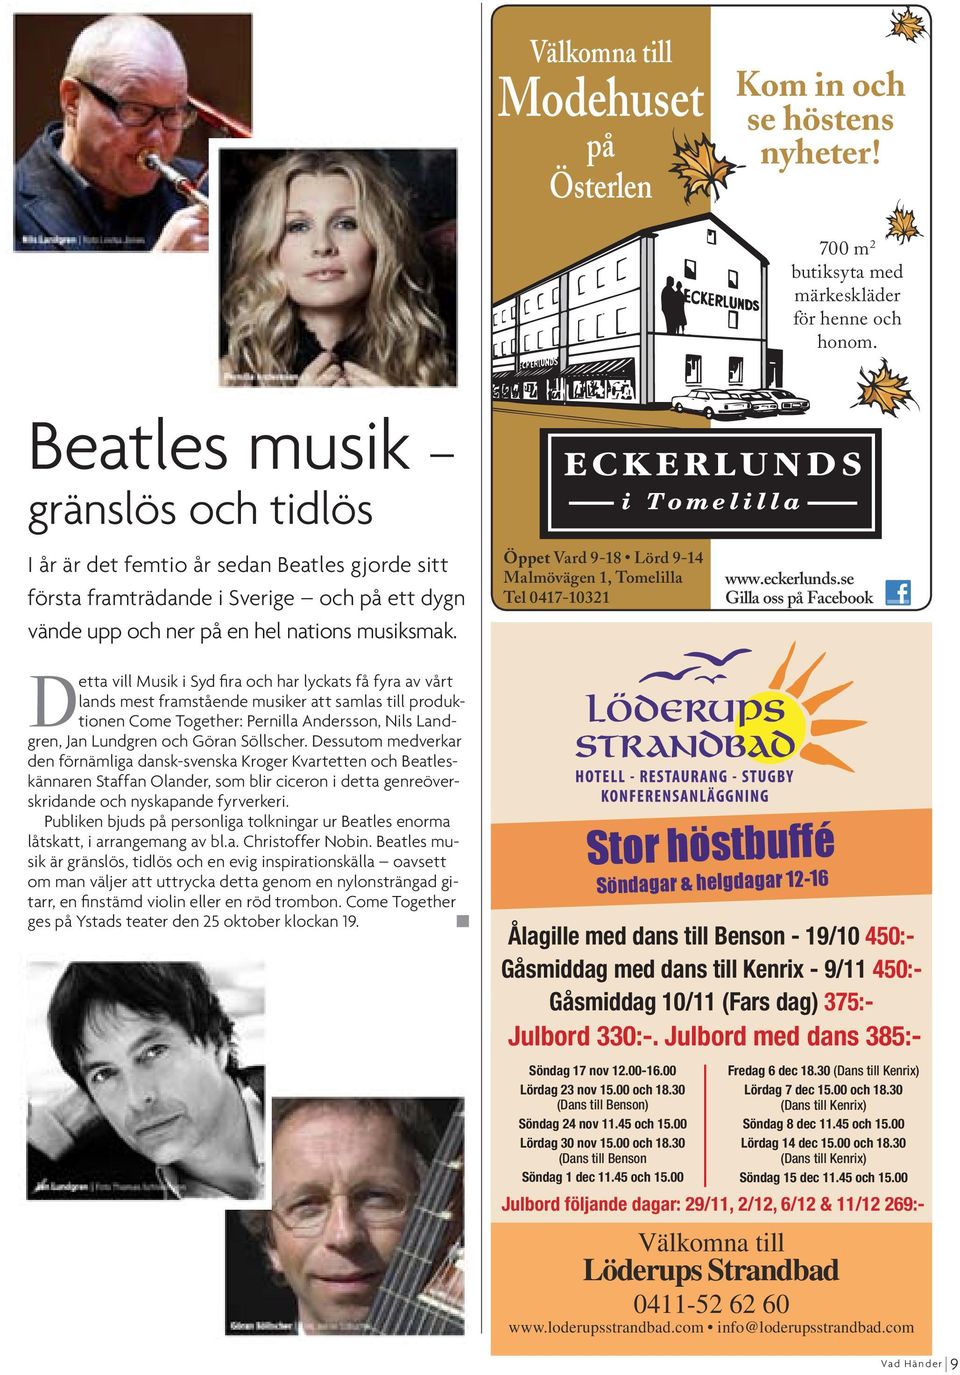 Detta vill Musik i Syd fira och har lyckats få fyra av vårt lands mest framstående musiker att samlas till produktionen Come Together: Pernilla Andersson, Nils Landgren, Jan Lundgren och Göran